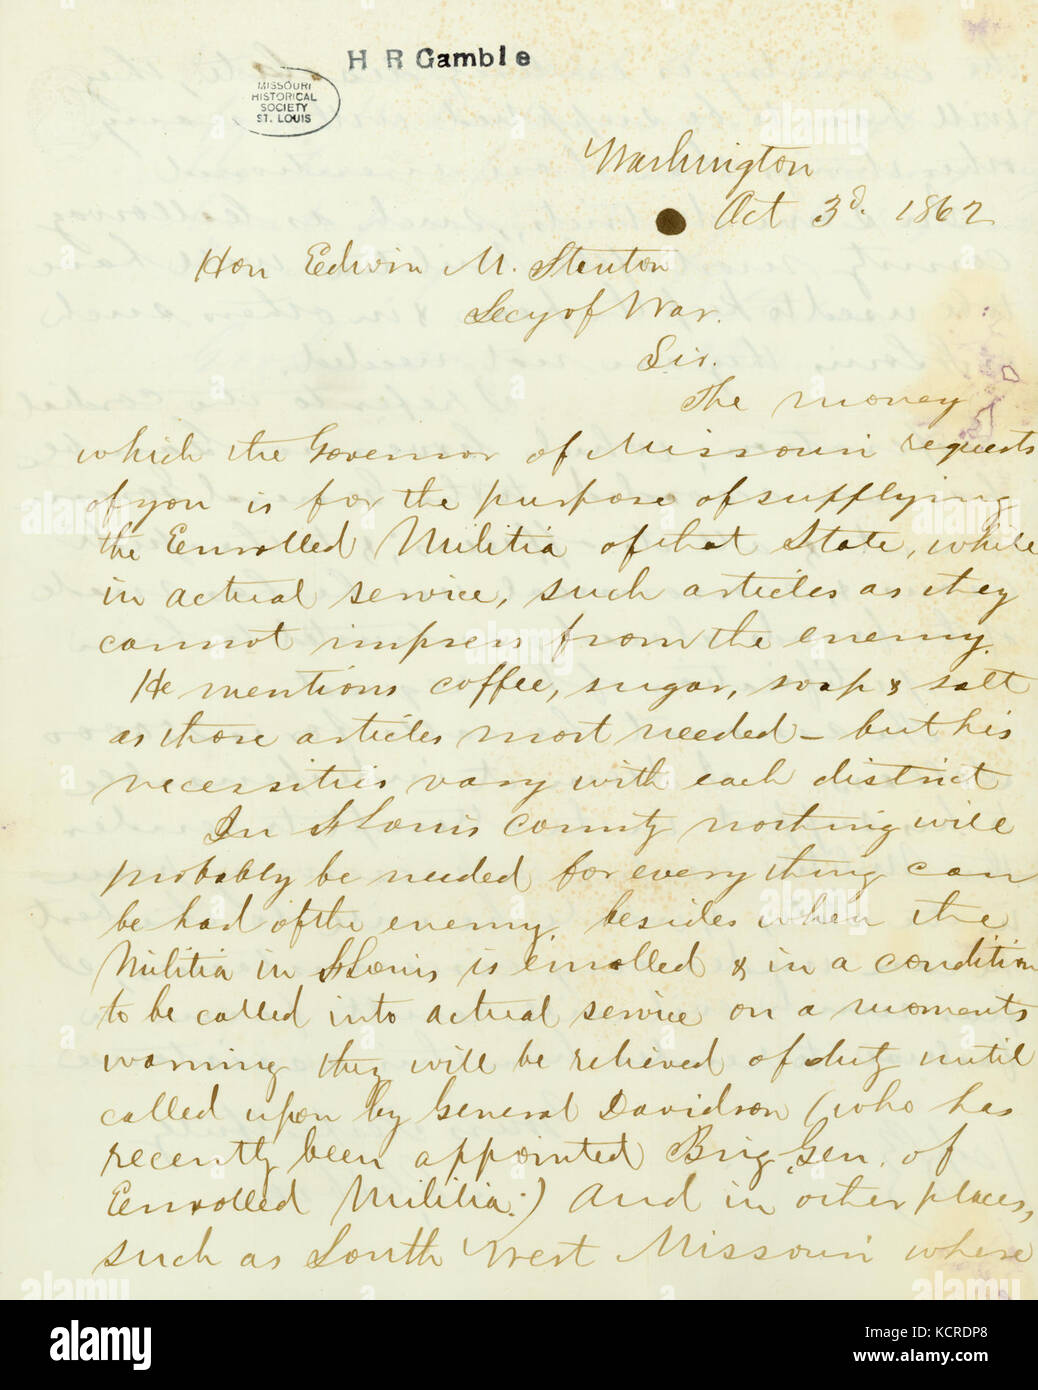 Copie contemporaine de lettre signée C. Gibson, Washington, à l'honorable Edwin M. Stanton, Secy. de la guerre, le 3 octobre 1862 Banque D'Images